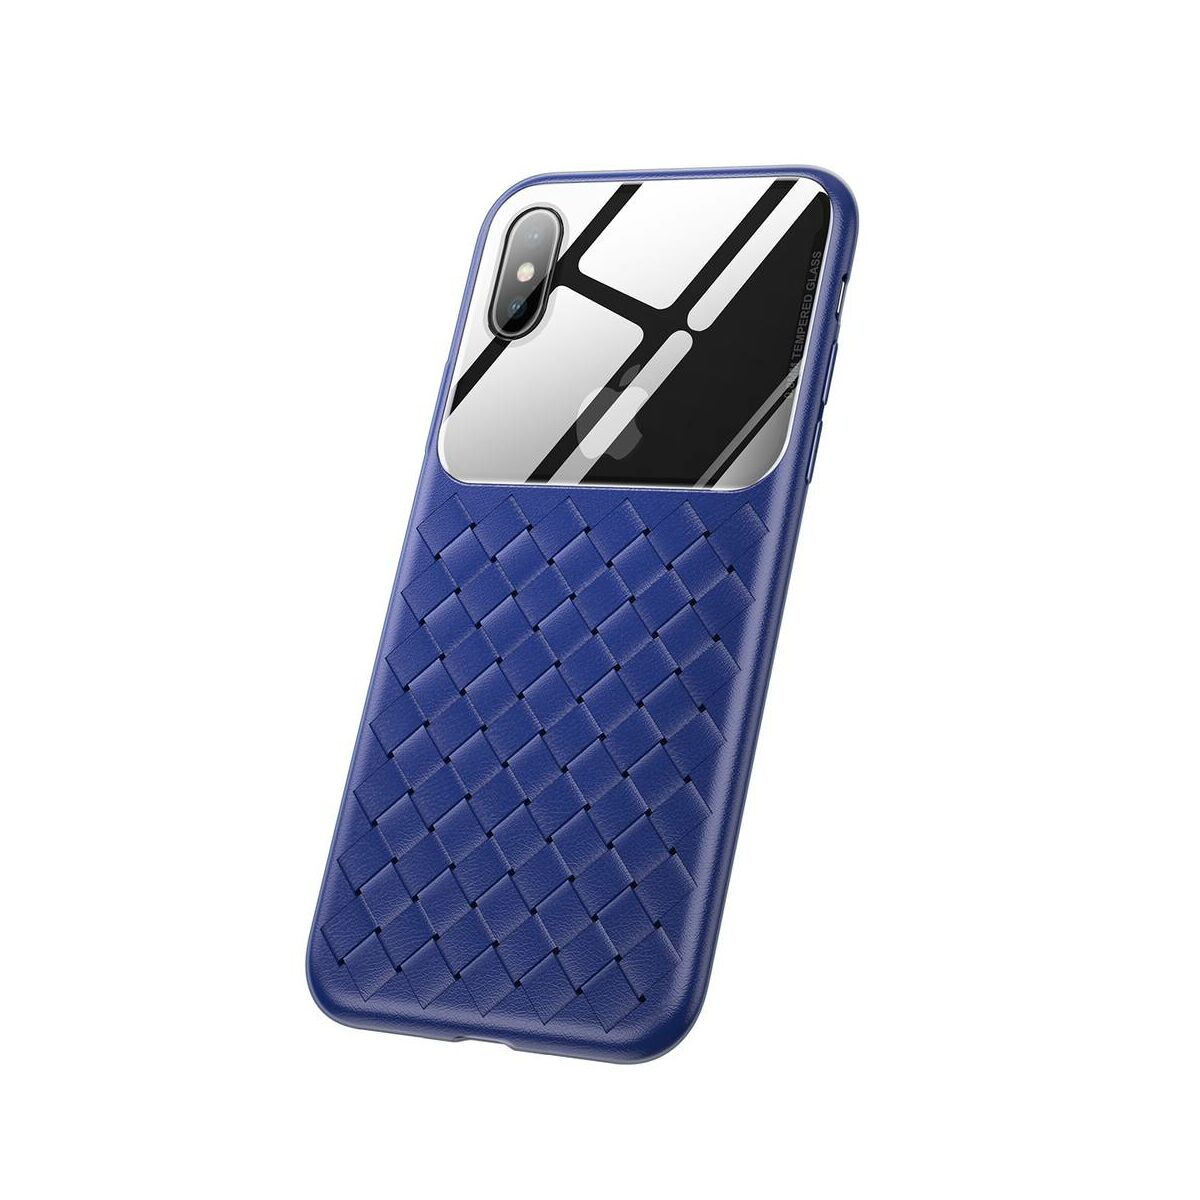 Kép 9/10 - Baseus iPhone XS Max üveg & tok, BV Weaving, kék (WIAPIPH65-BL03)